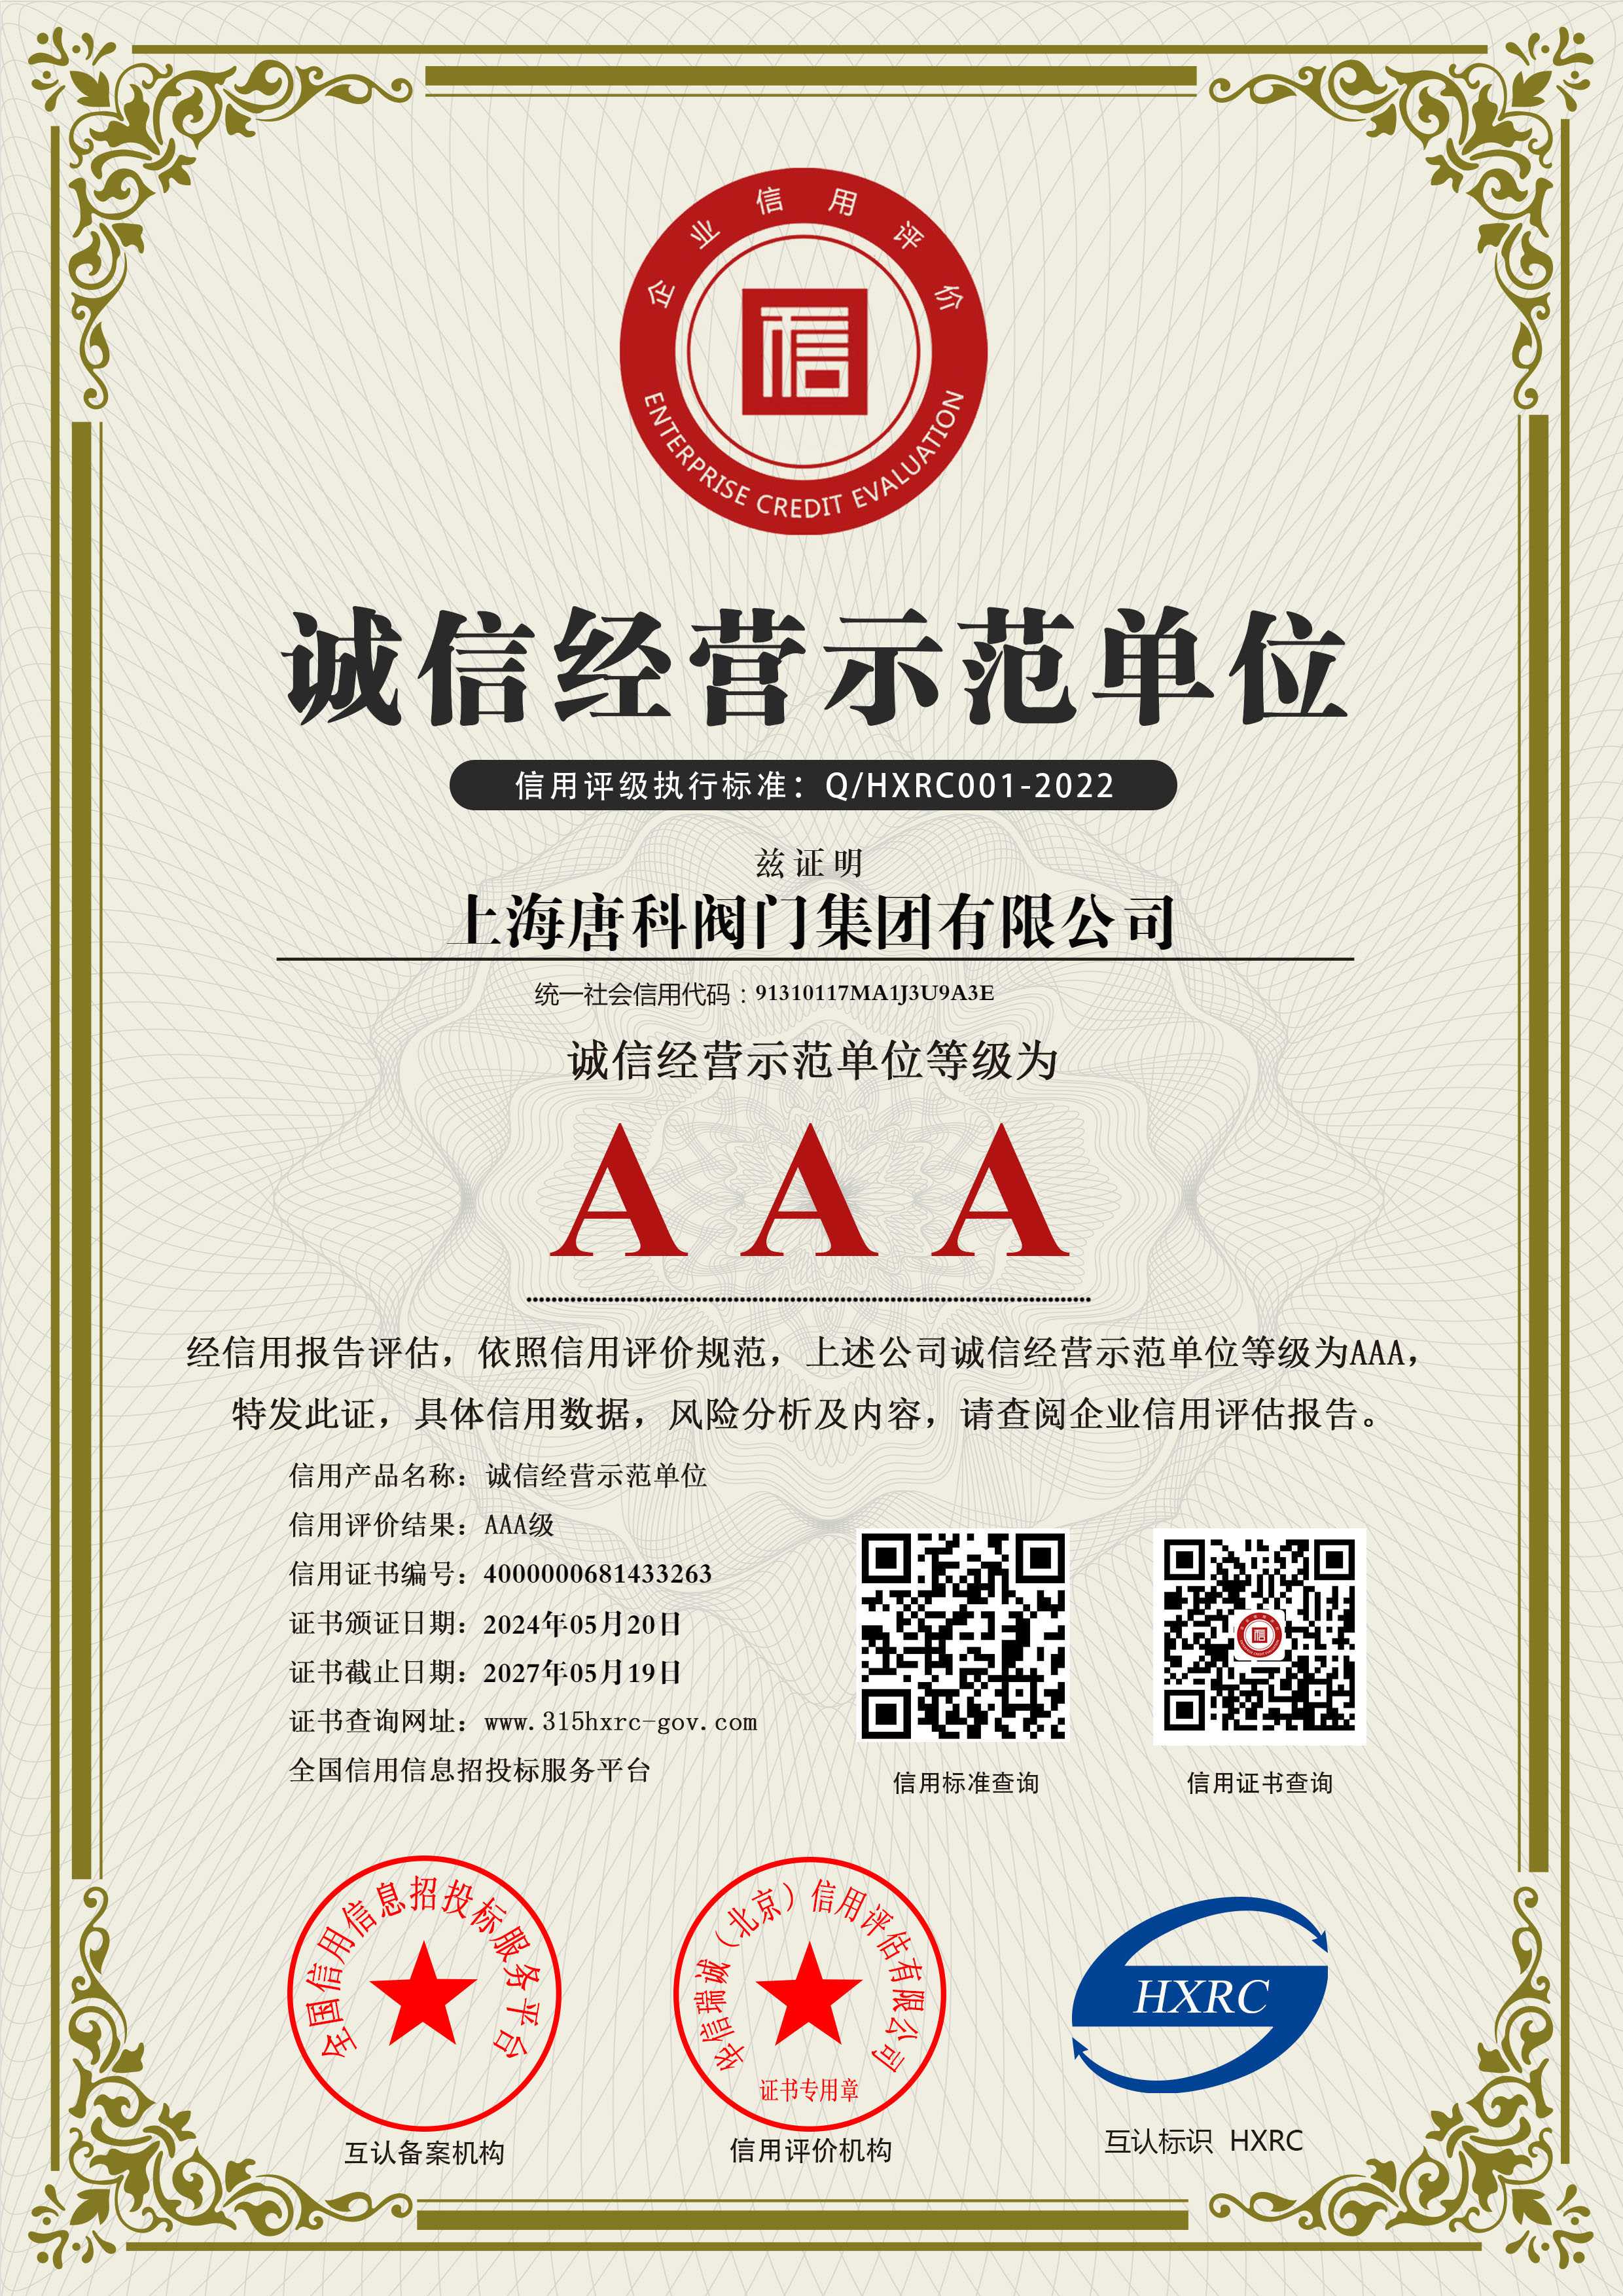 2 上海唐科閥門集團有限公司-AAA級誠信經營示范單位-新版